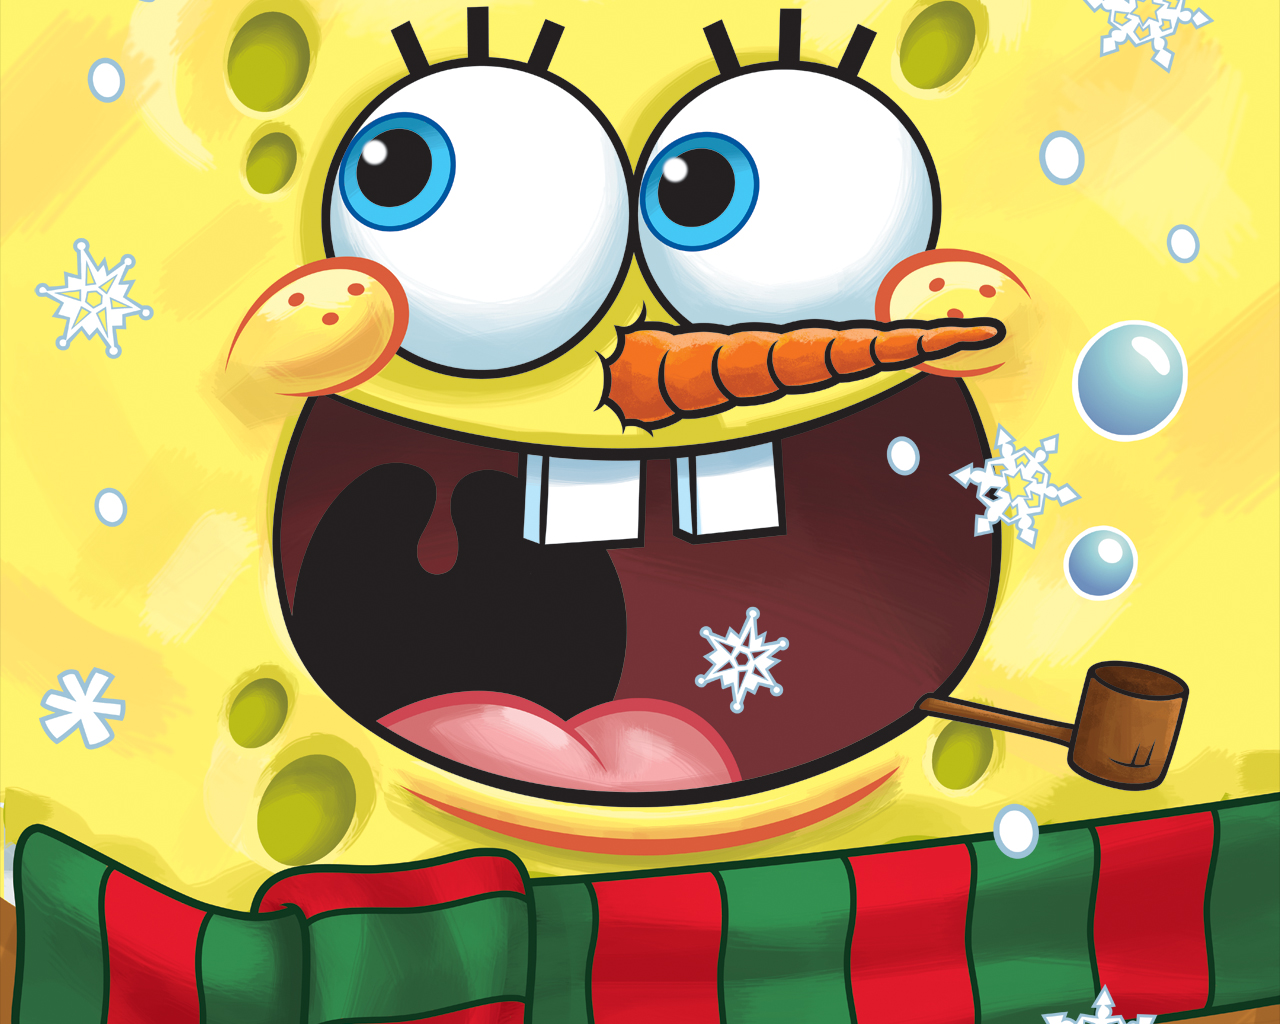 Spongebob Schwammkopf - Spongebob Squarepants Wallpaper (33903246 ...